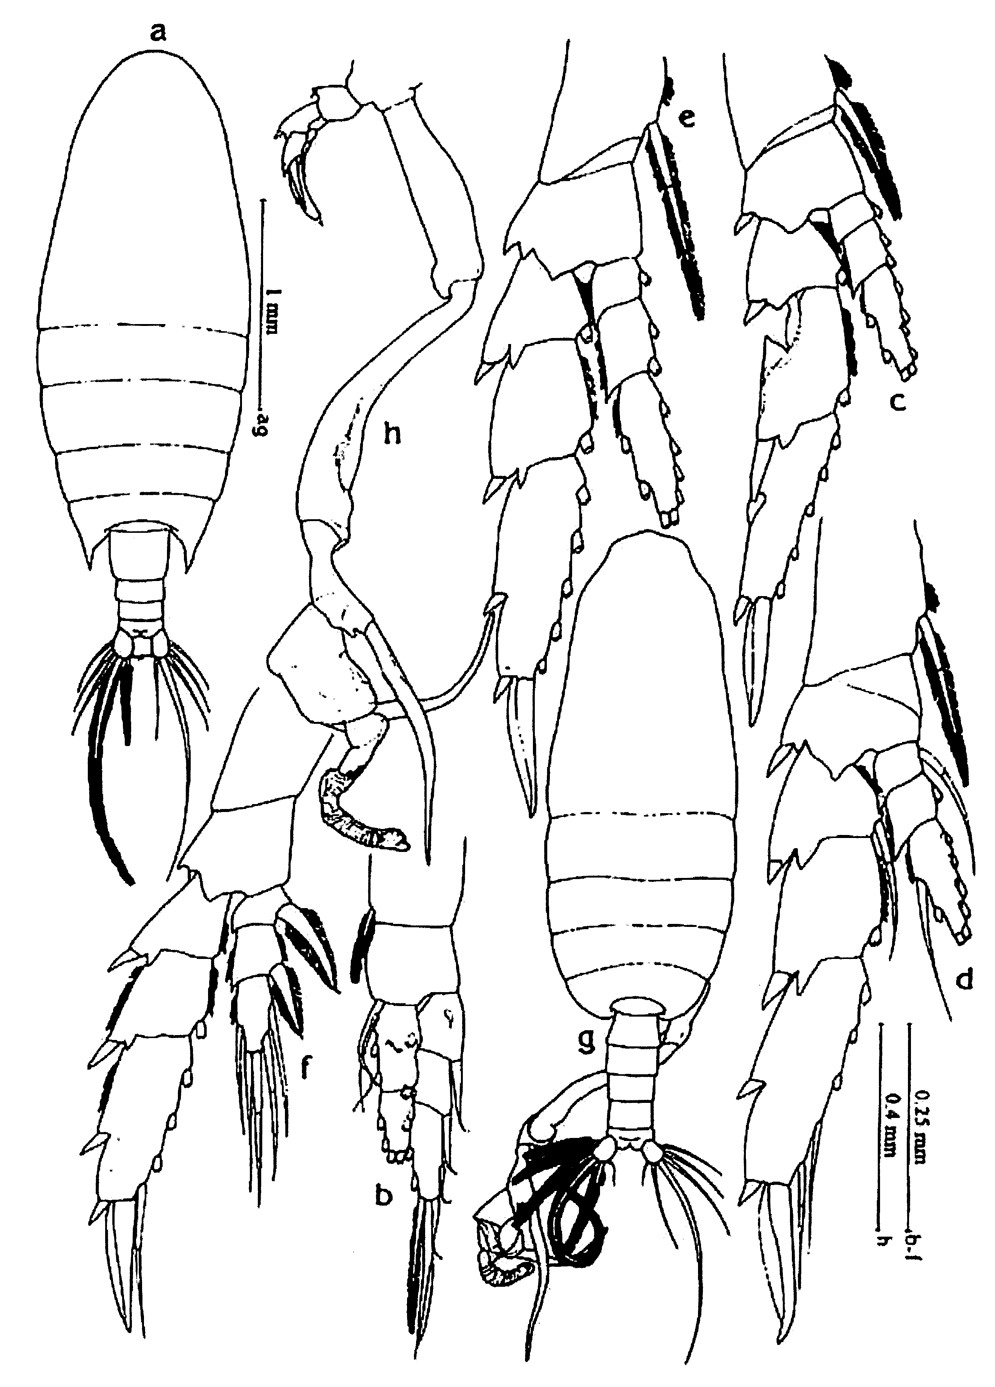 Espèce Undinula vulgaris - Planche 30 de figures morphologiques